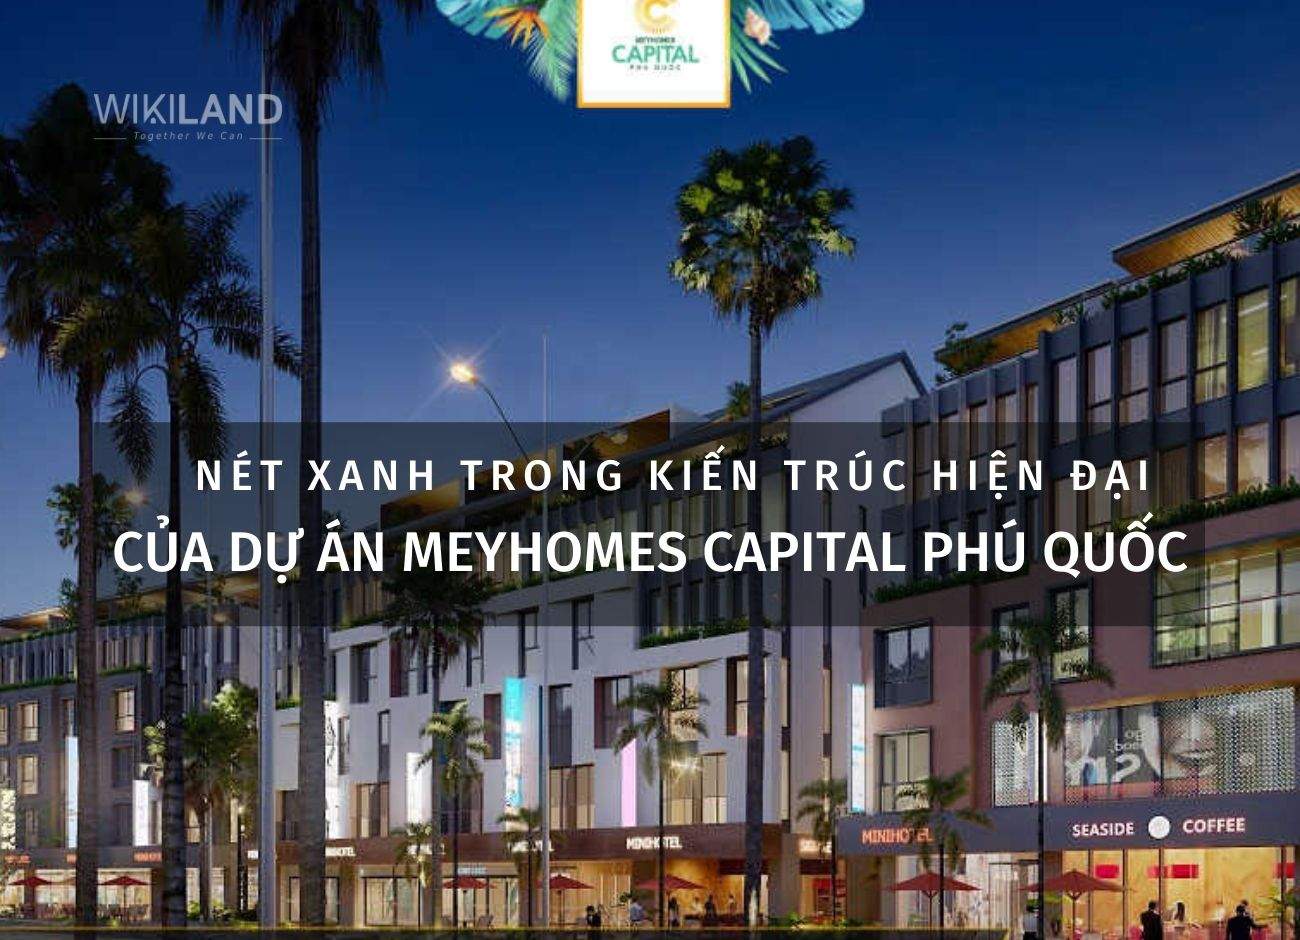 Nét xanh trong kiến trúc hiện đại Phú Quốc của dự án Meyhomes Capital Phú Quốc